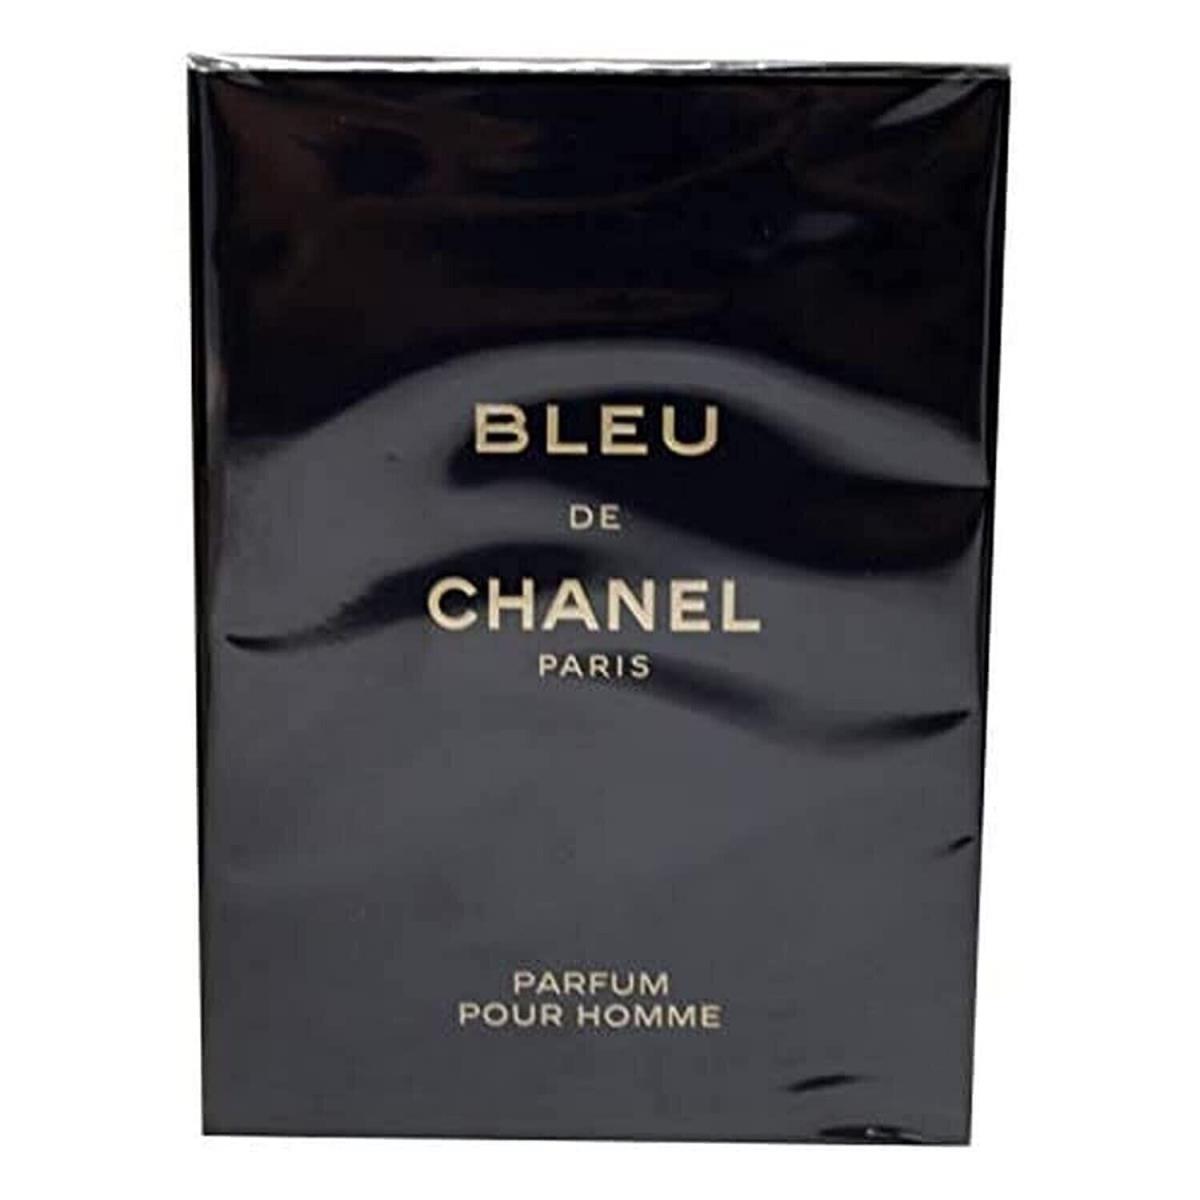 Bleu DE Chanel BY Chanel 5.0 OZ Parfum Spray